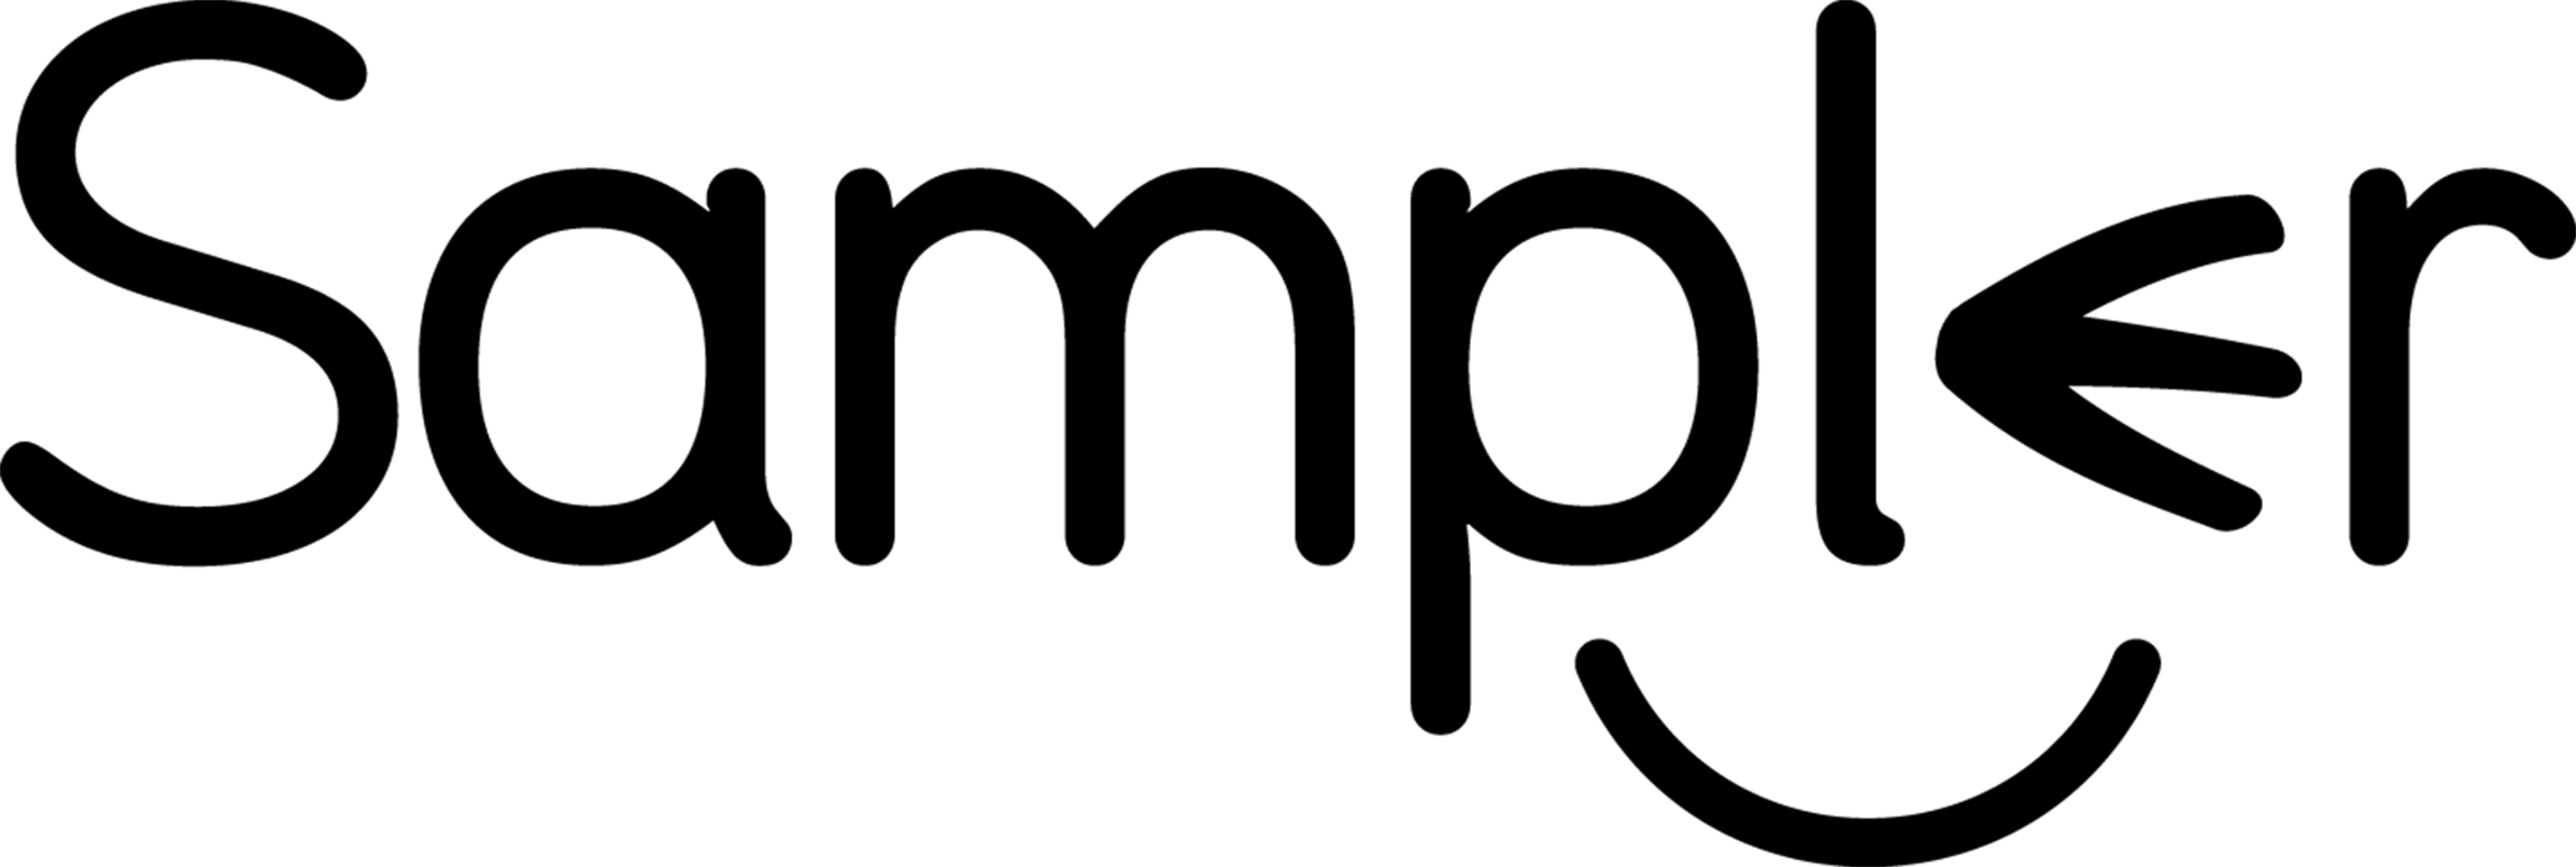 sampler-digital-sampling